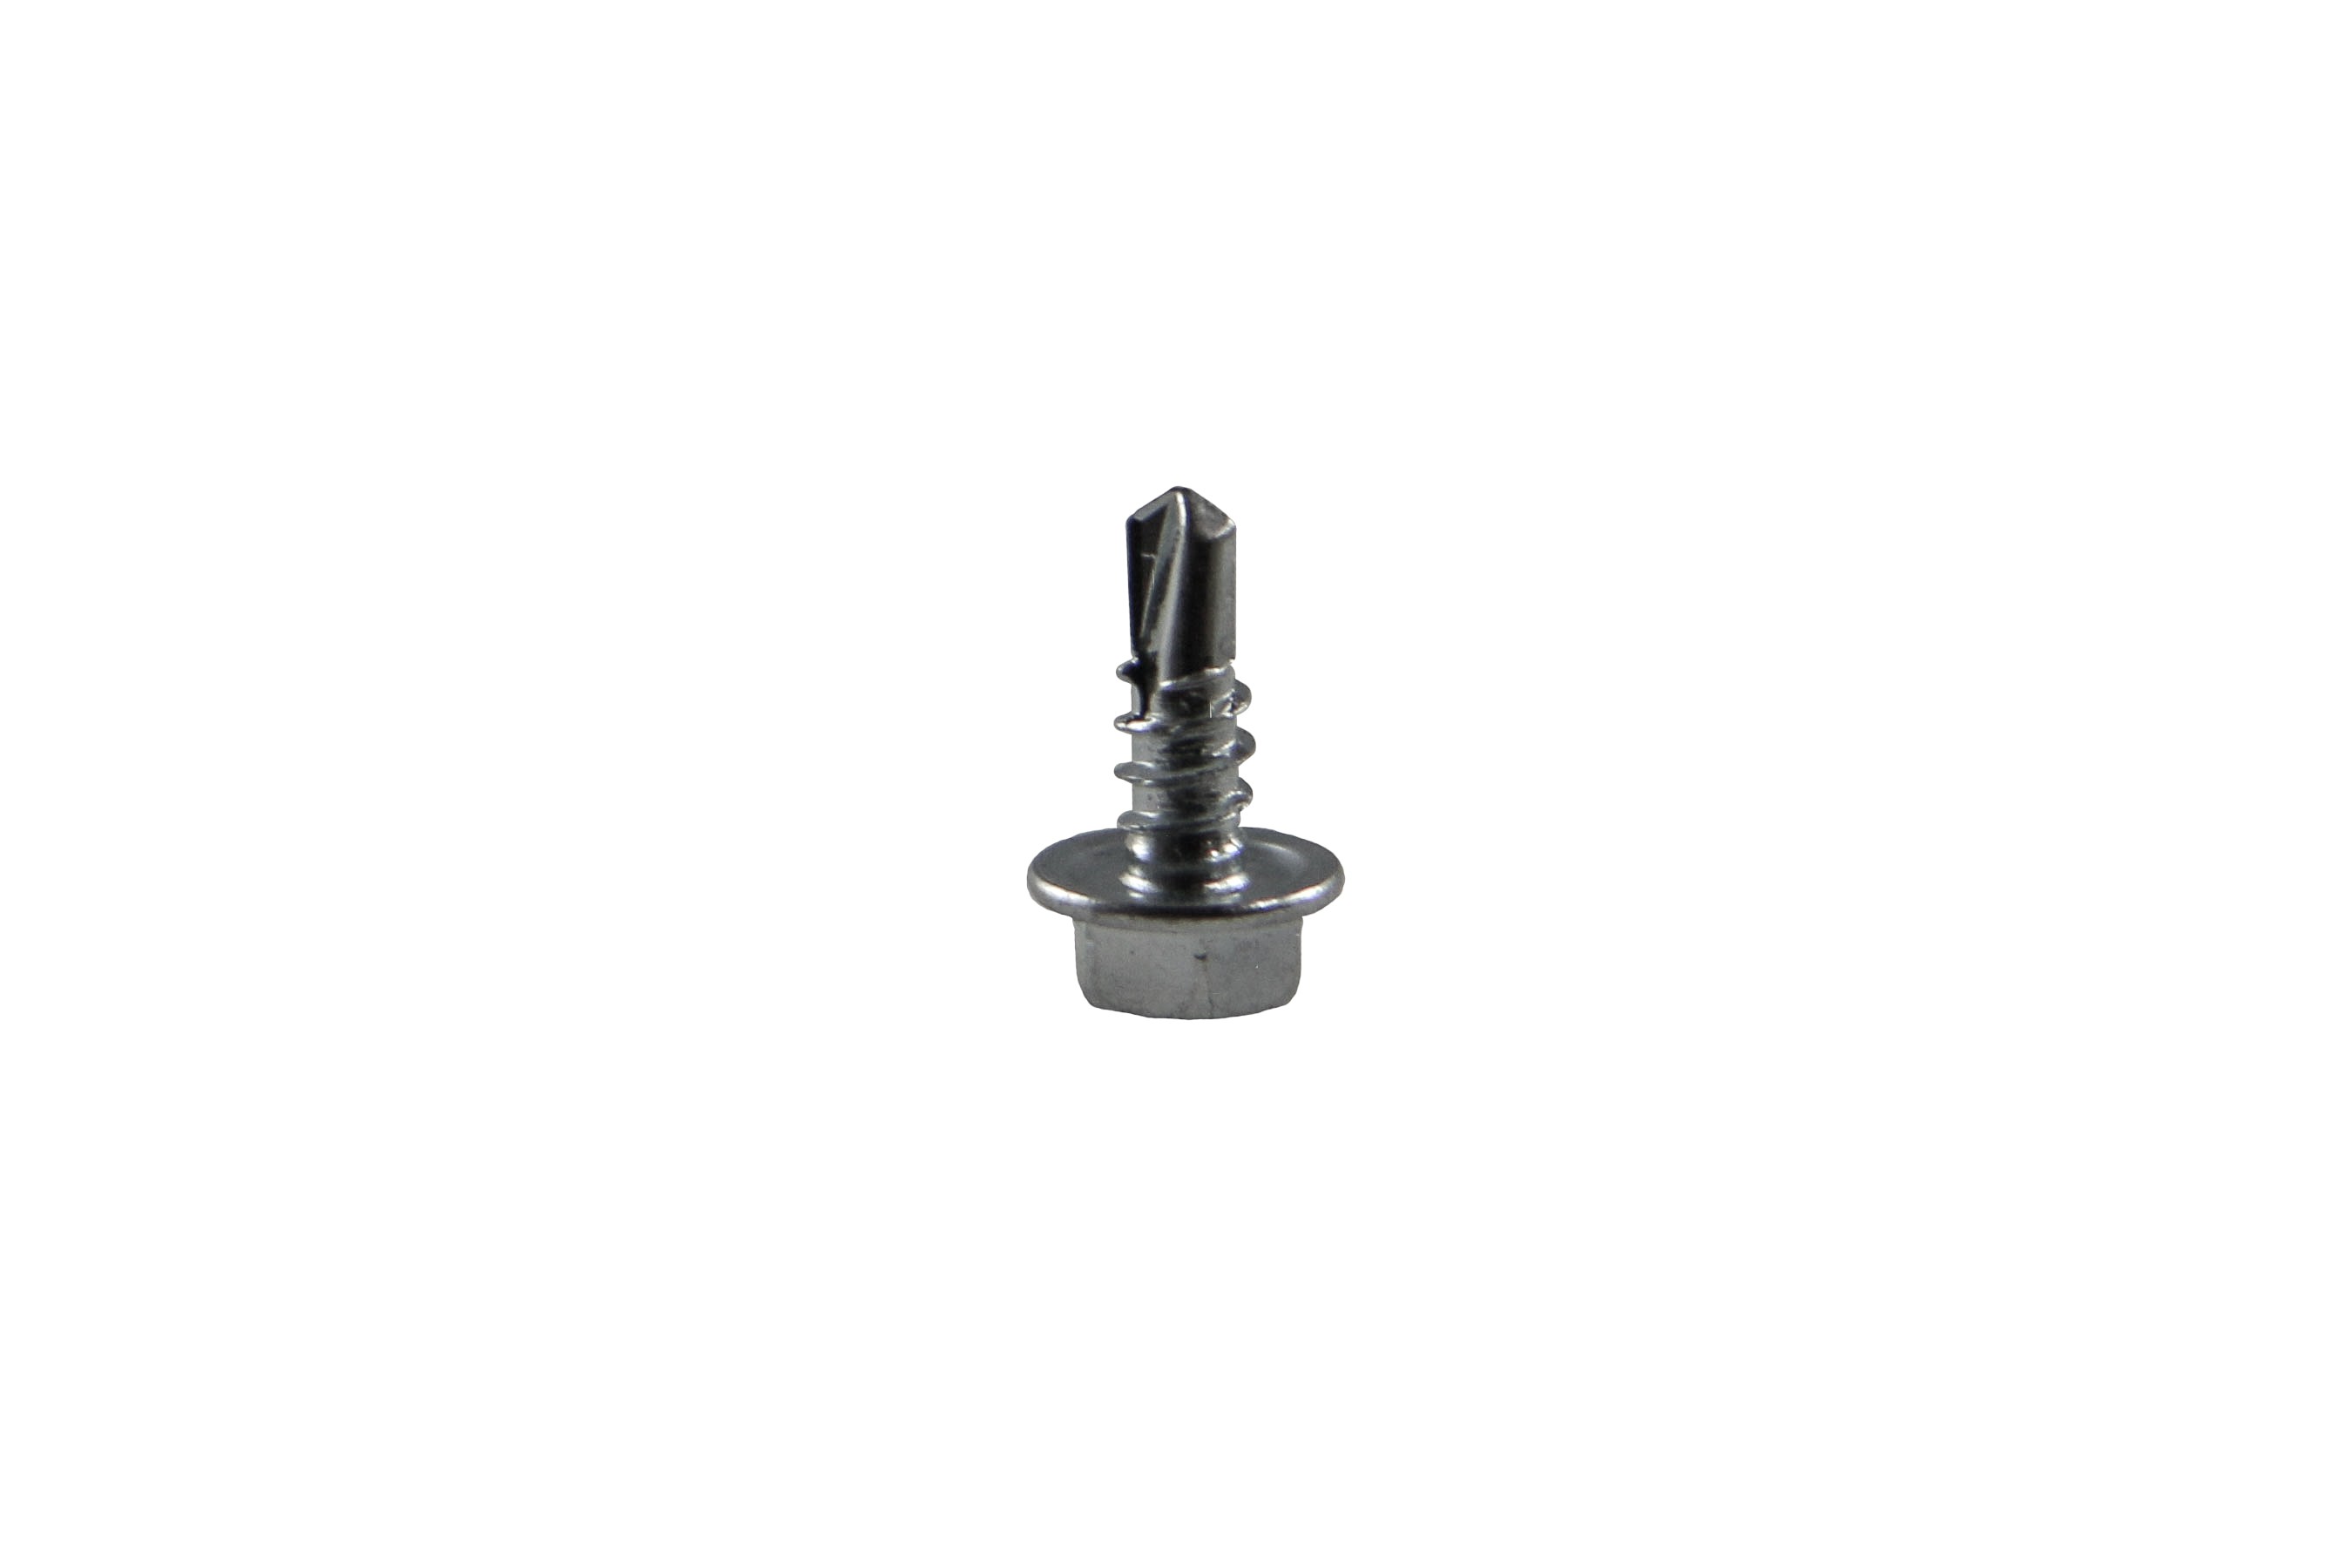 Drilling screw 3,9 x 19 mm